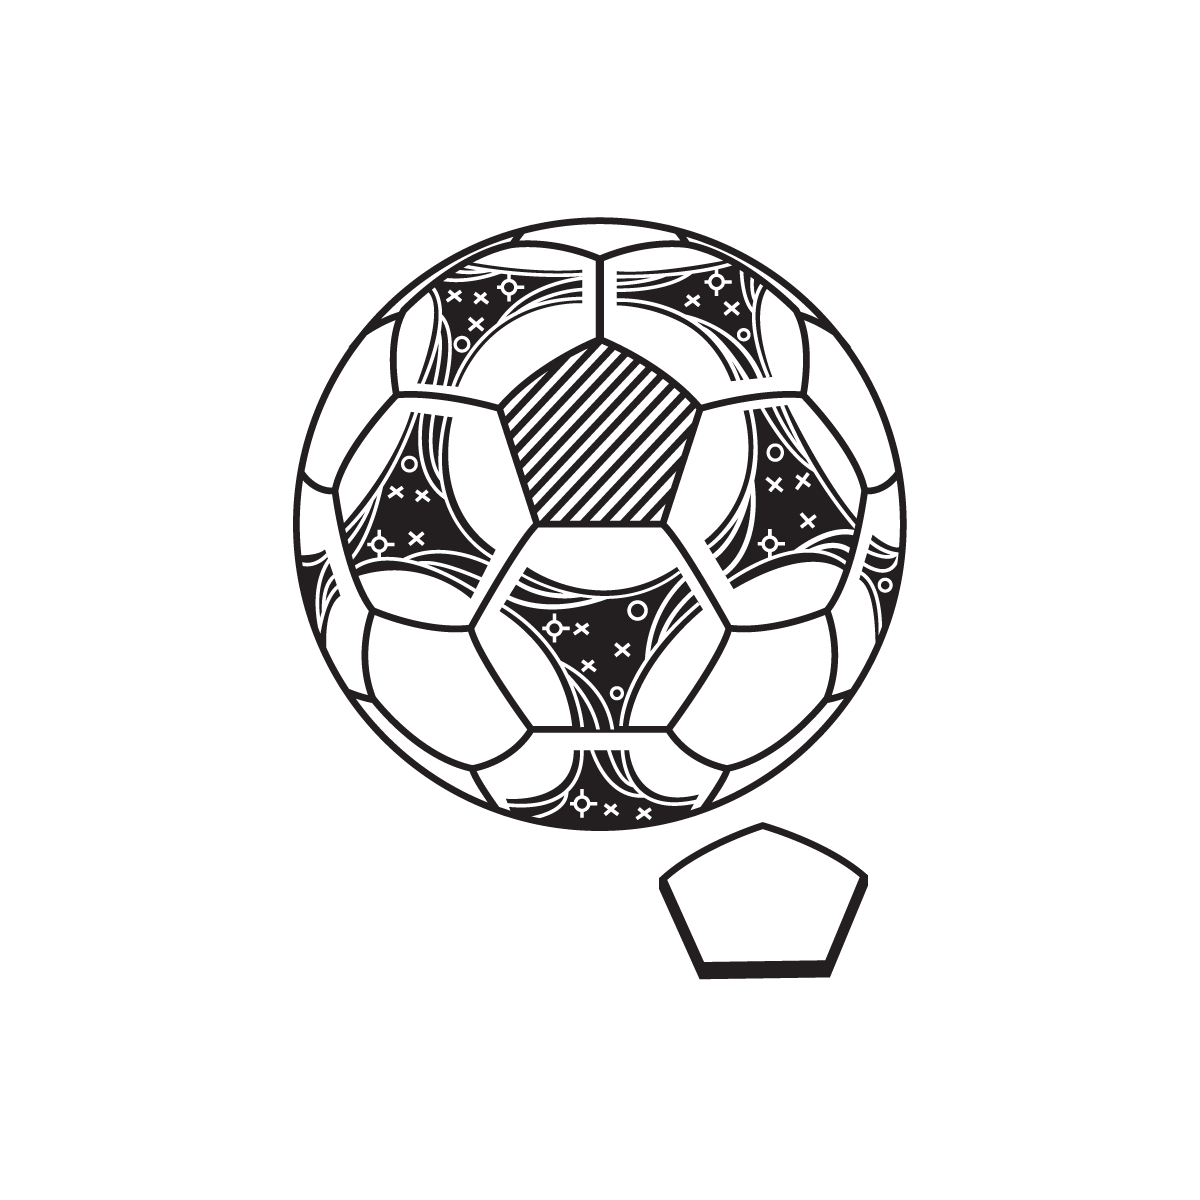 Association Ball Cup - #36daysoftype on Behance